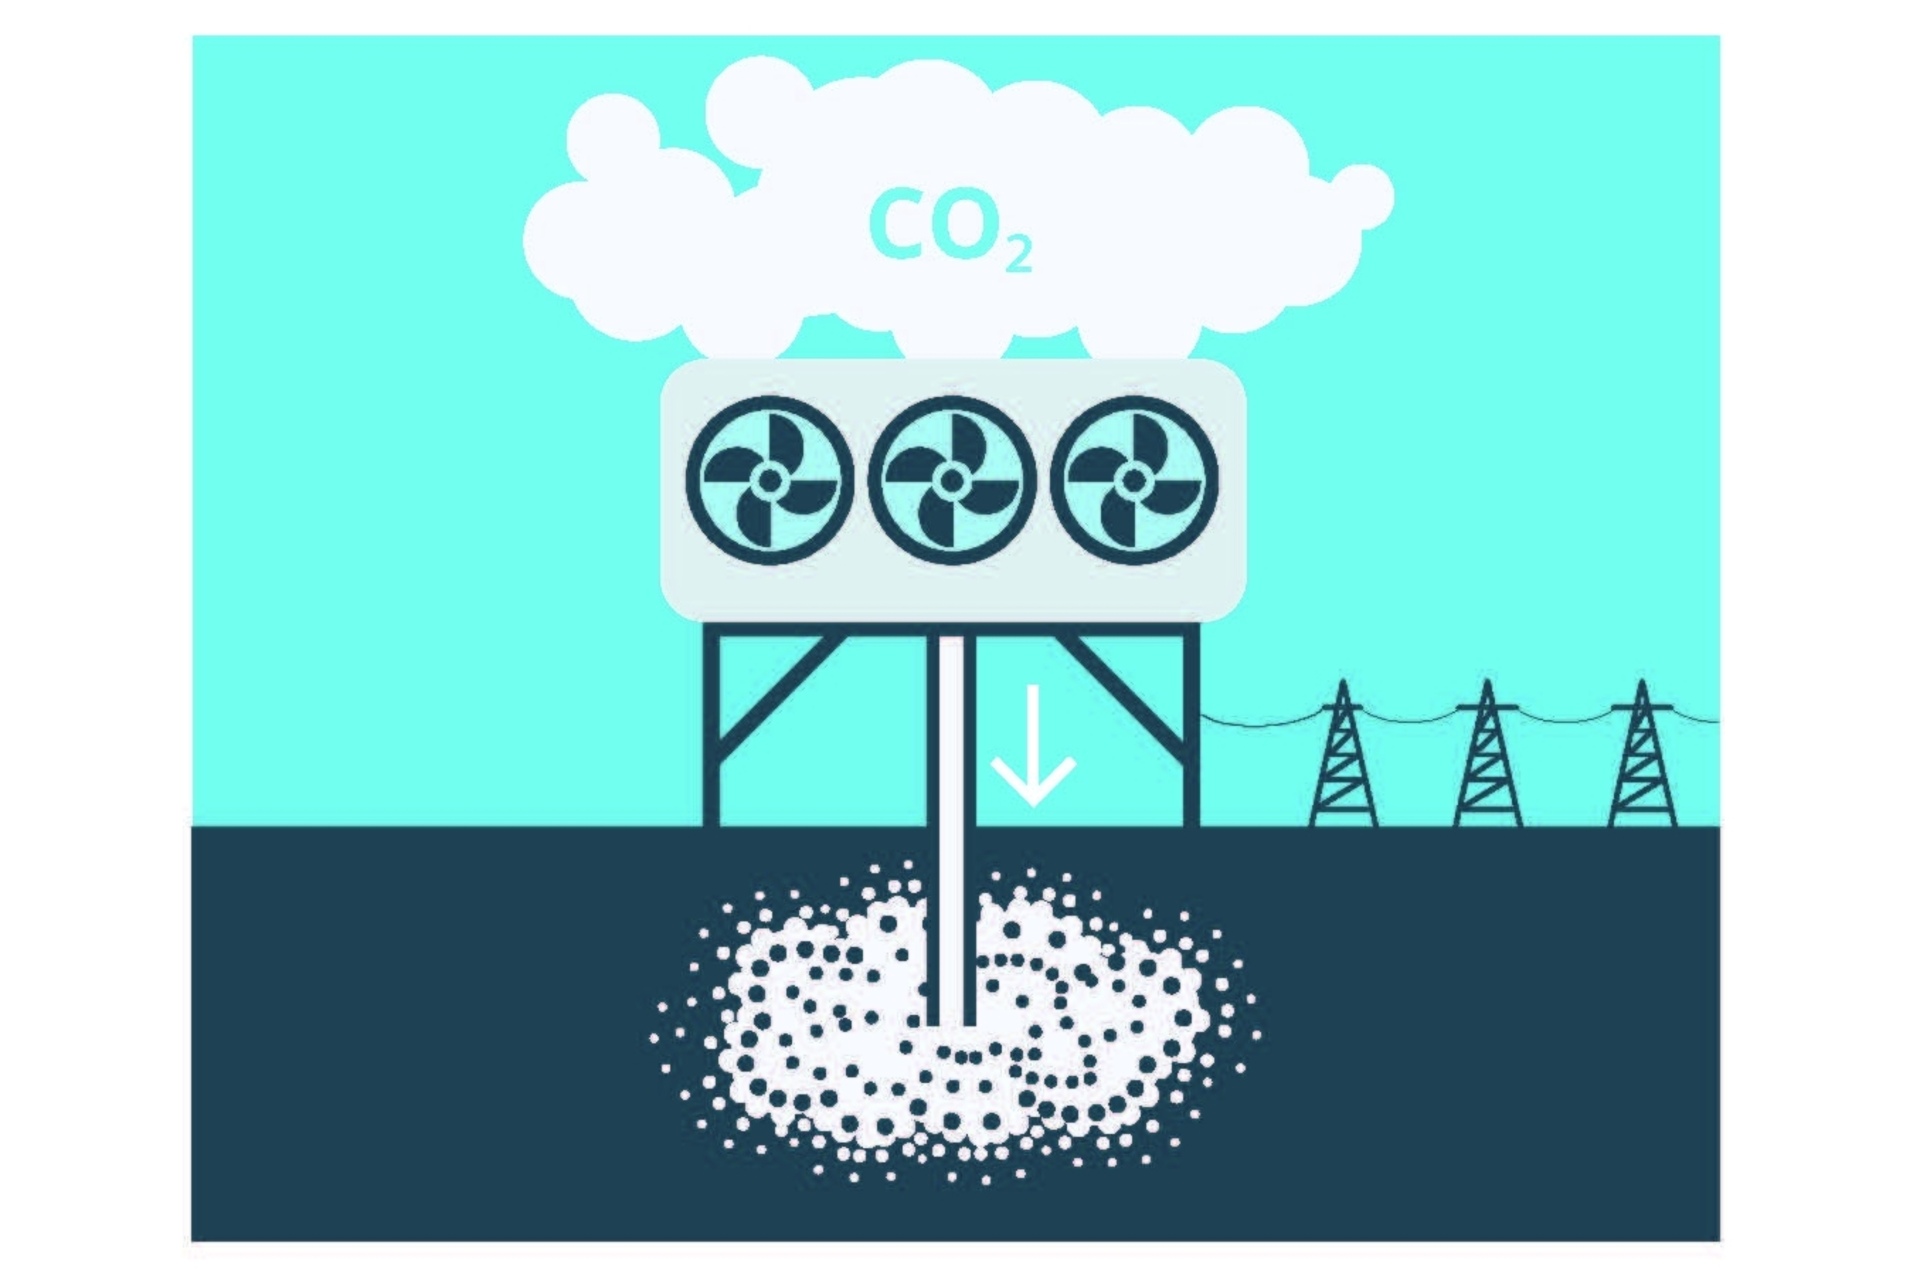 CO2: namens TA-SWISS hebben het Öko-Institut en EMPA vijf federaal relevante NET's beoordeeld